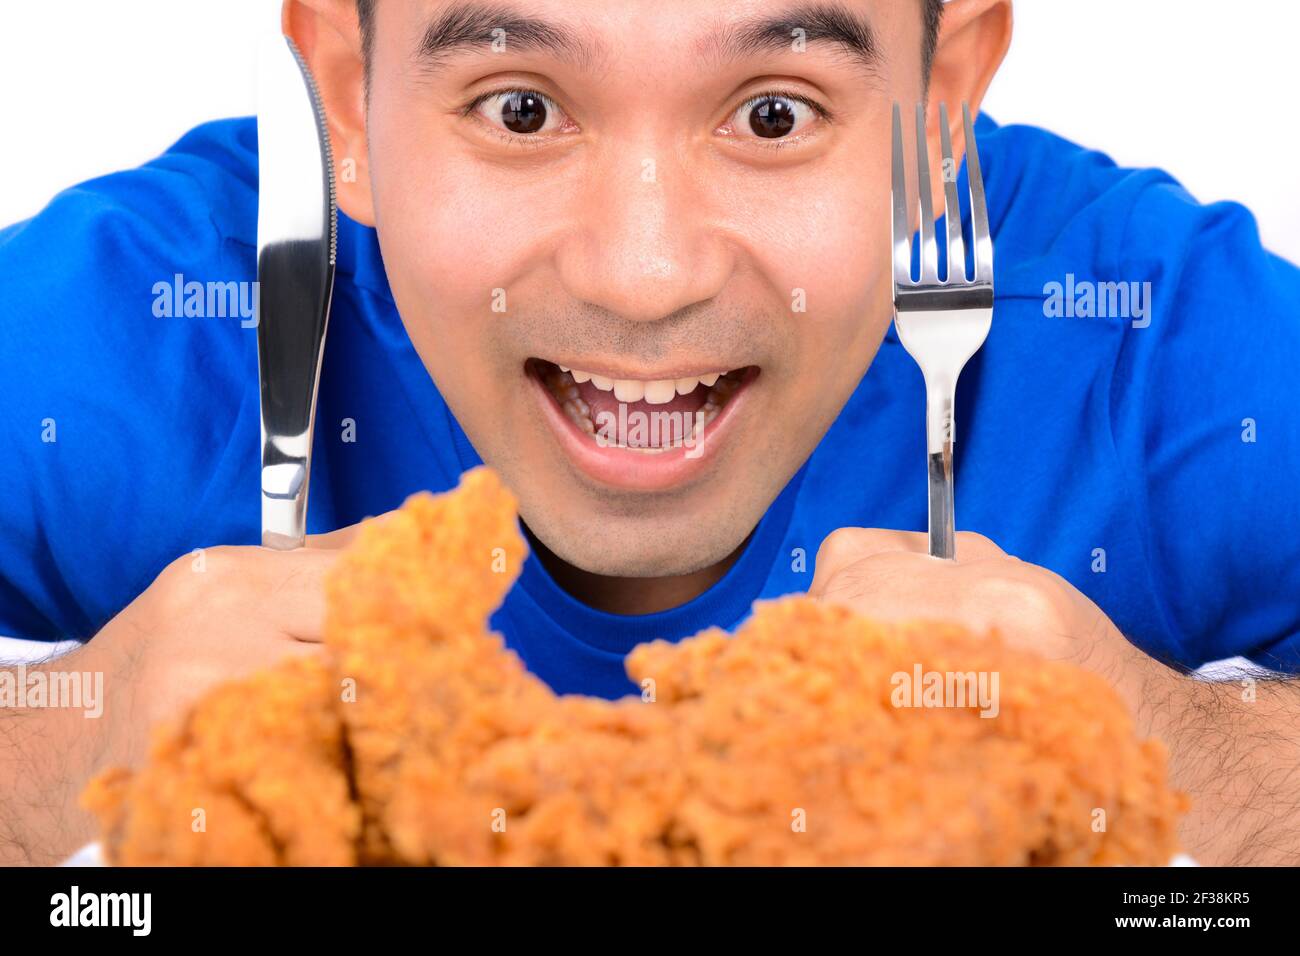 Ein Mann hält Messer und Gabel, starrte auf gebratenes Huhn, zu essen Stockfoto